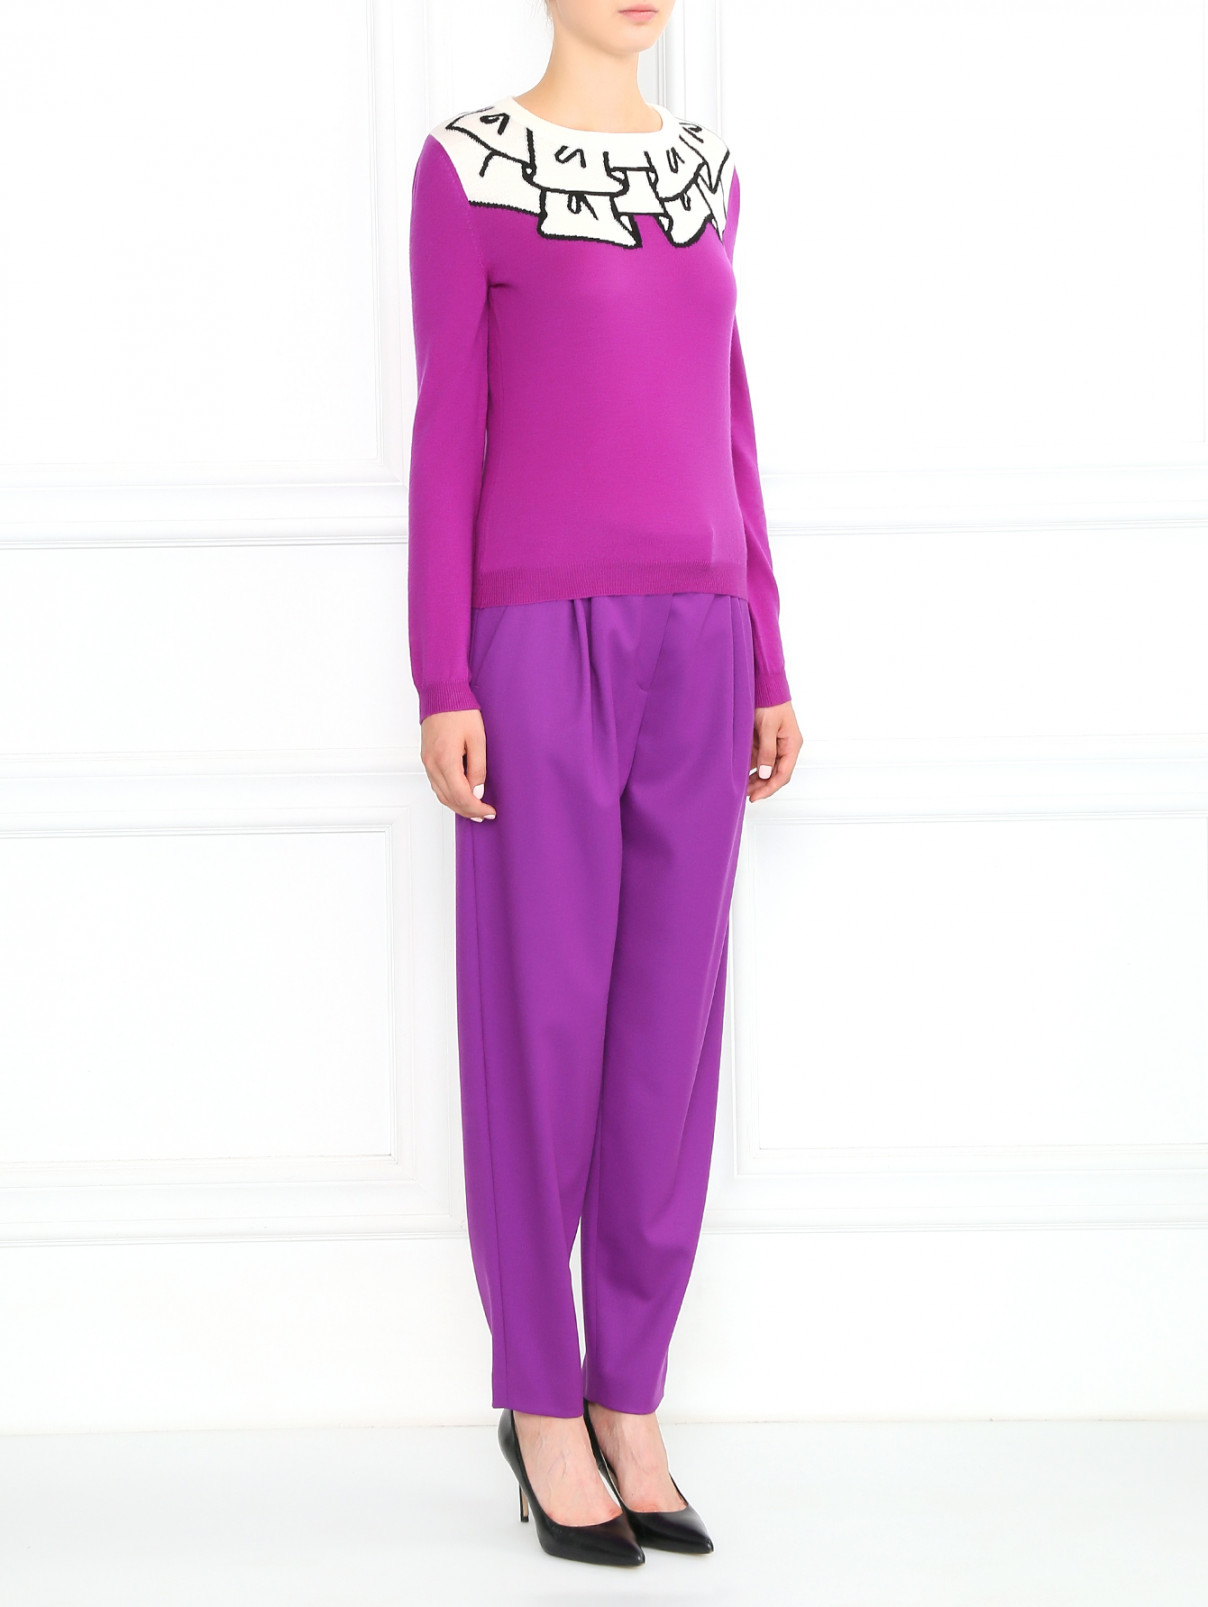 Джемпер из шерсти с узором Moschino Boutique  –  Модель Общий вид  – Цвет:  Фиолетовый